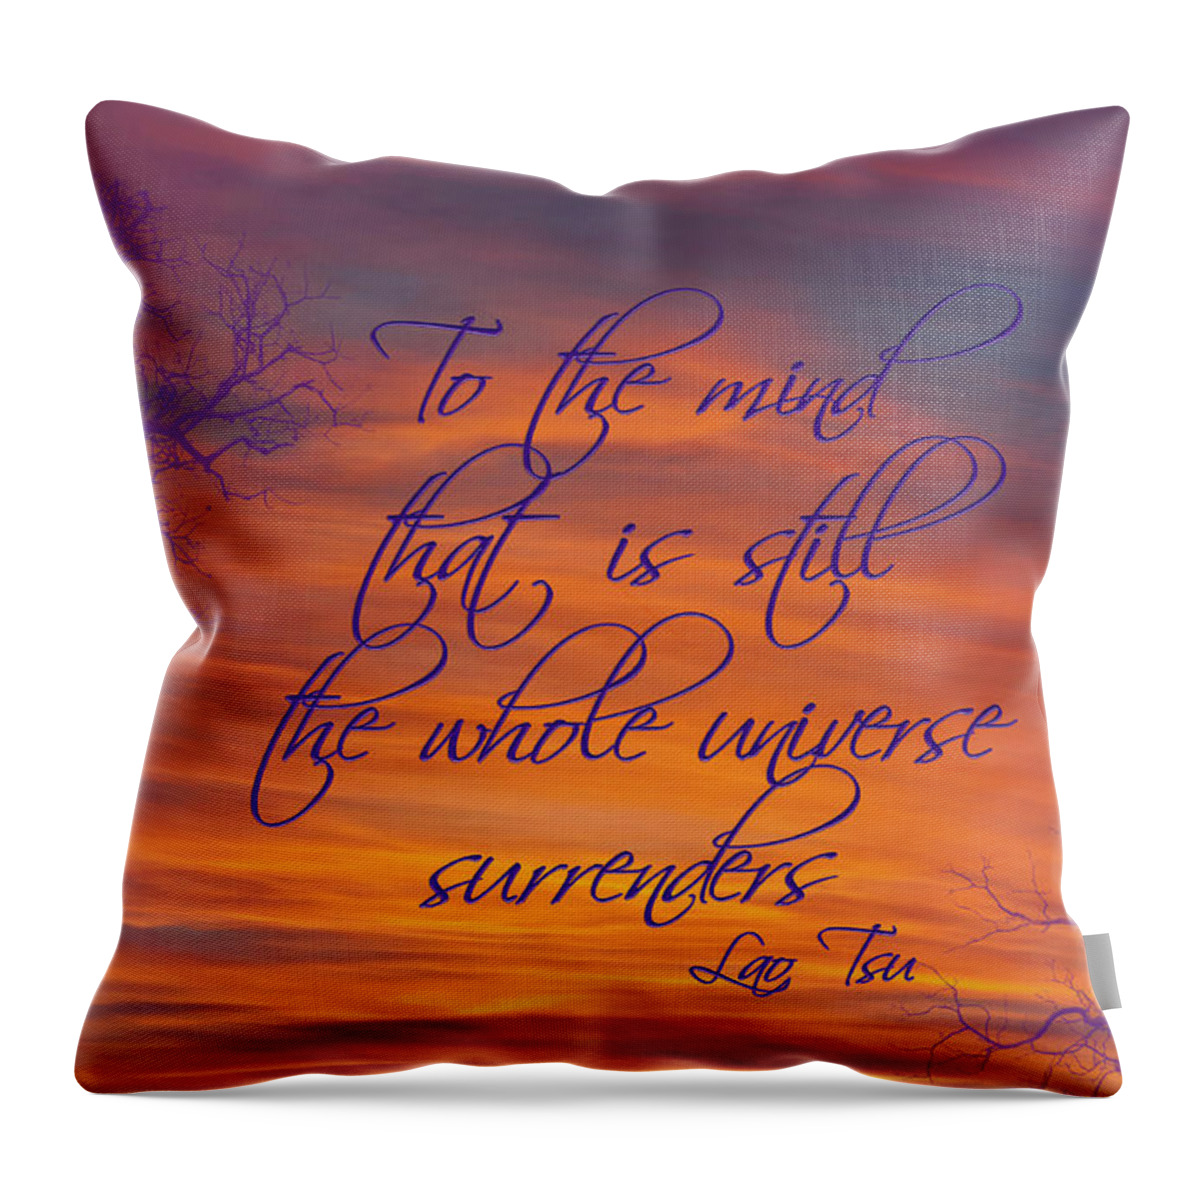 Sunset Throw Pillow featuring the photograph A Still Mind by Jill Love